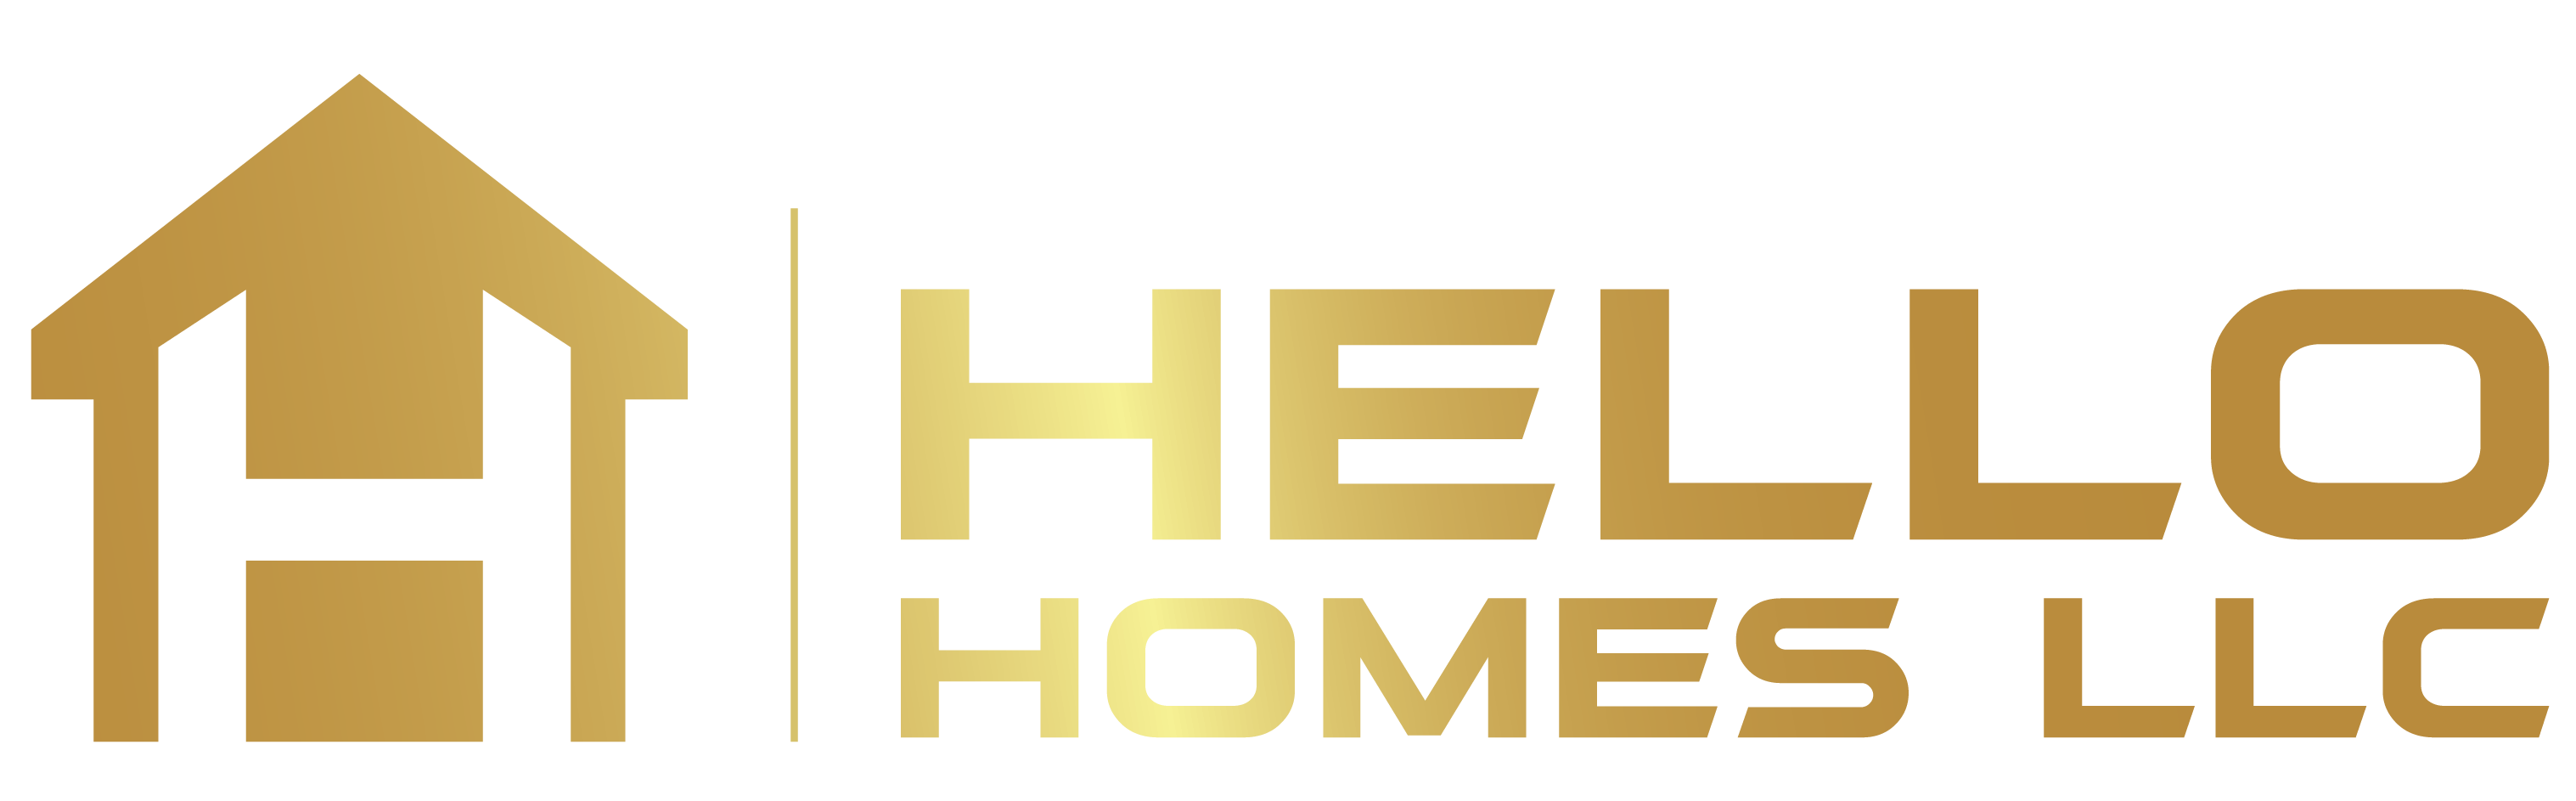 Hello Homes LLC